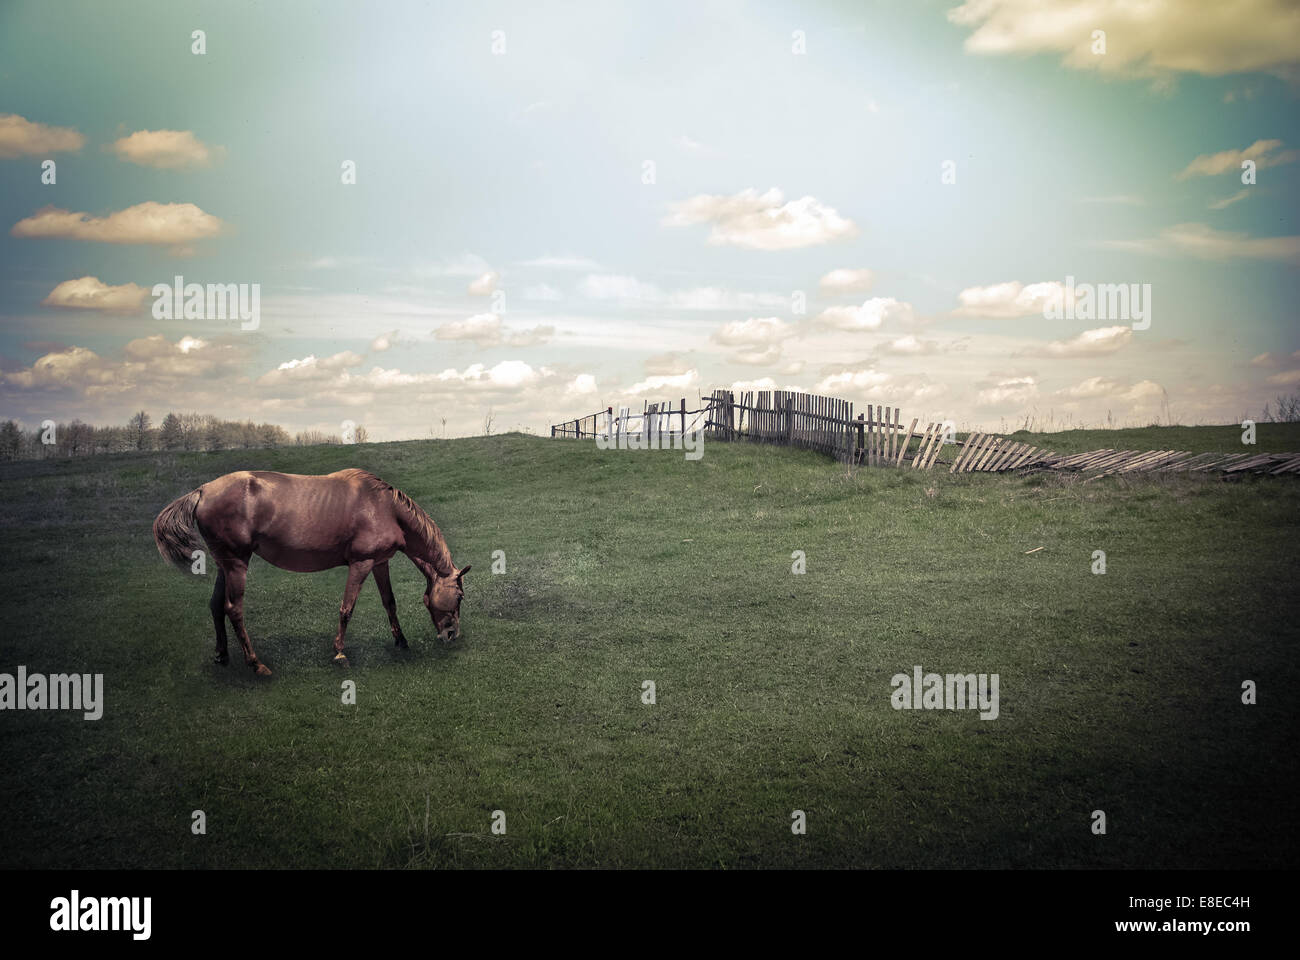 Giornata di sole in campagna. Paesaggio estivo con cavallo al pascolo sotto il blu cielo nuvoloso. Sullo sfondo della natura in stile vintage Foto Stock